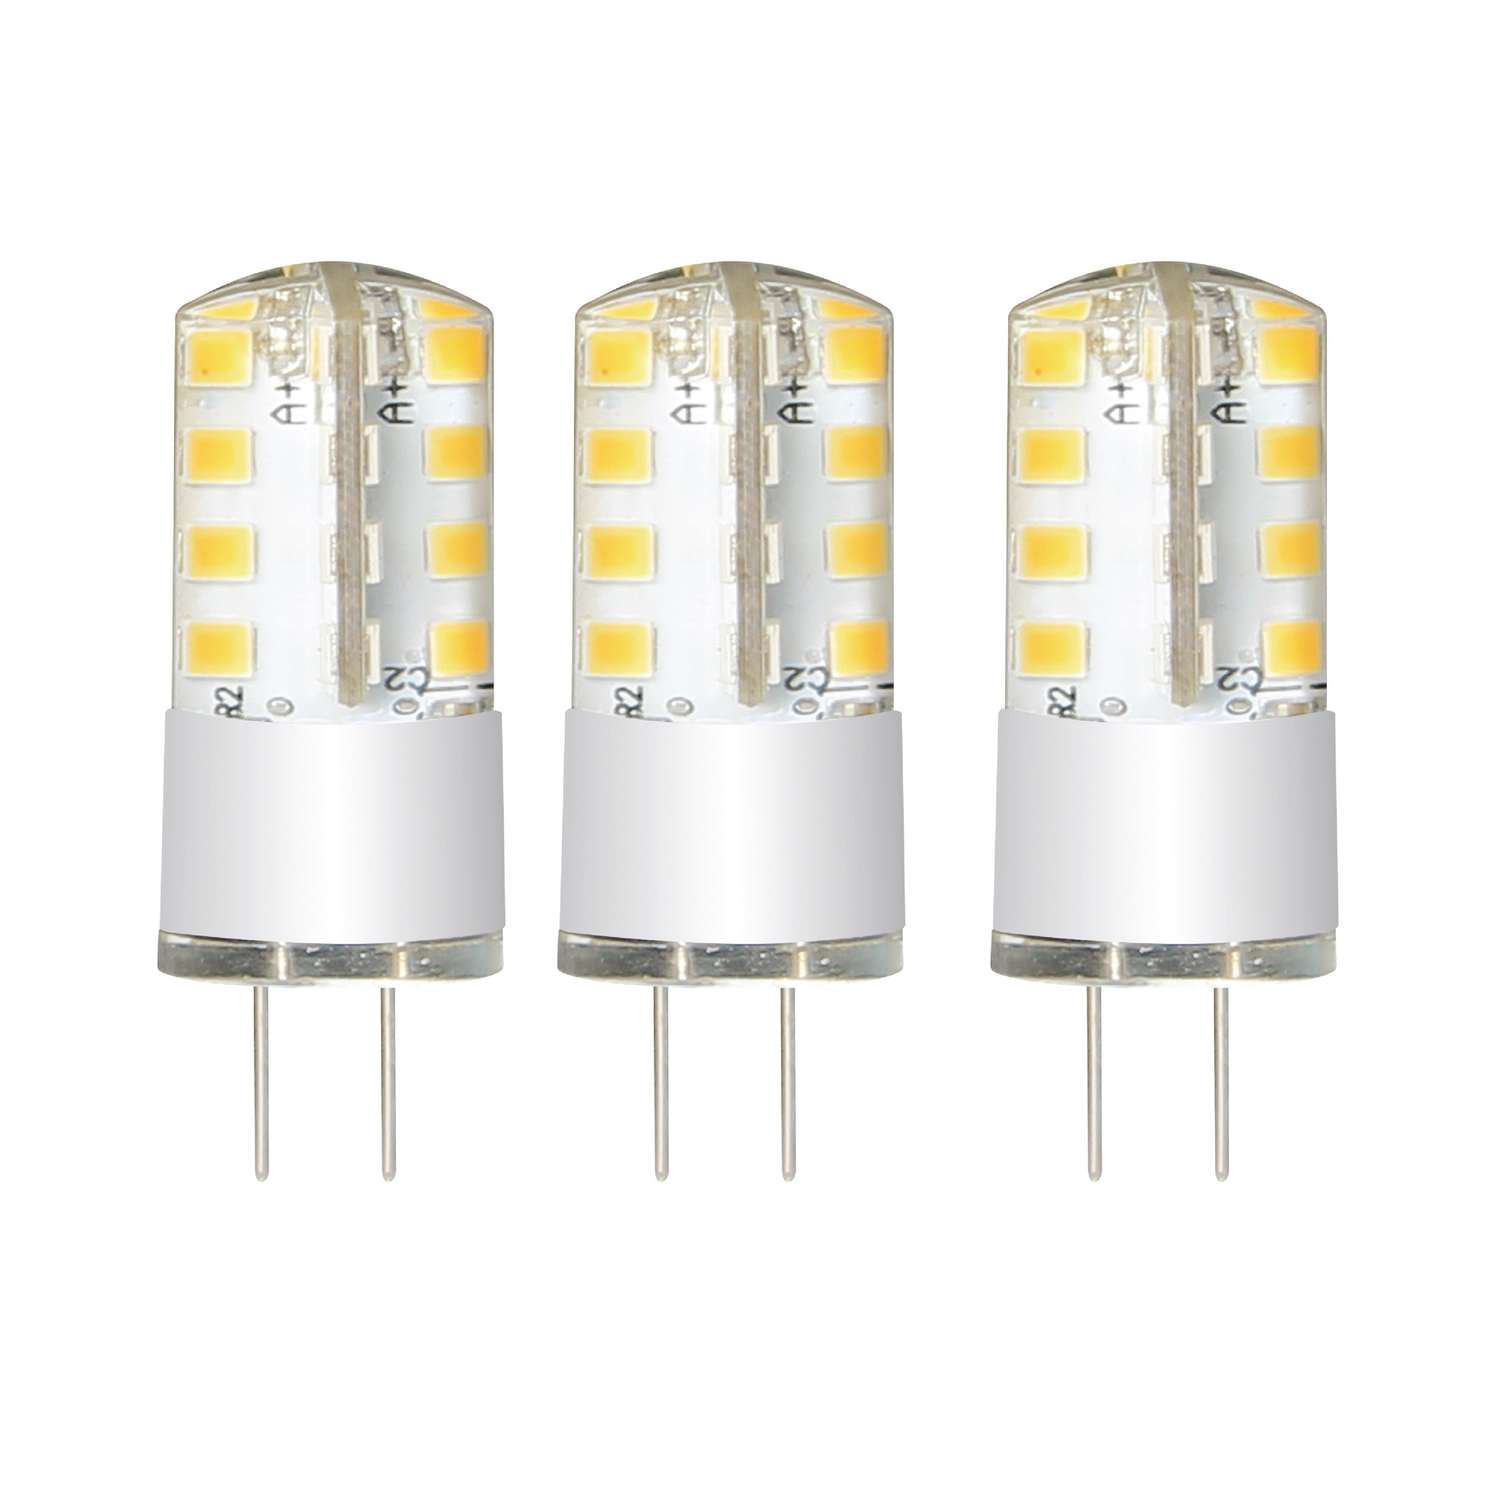 Лампа светодиодная КОСМОС LED 3w JC G4 220v 45_3 3 шт - фото 2